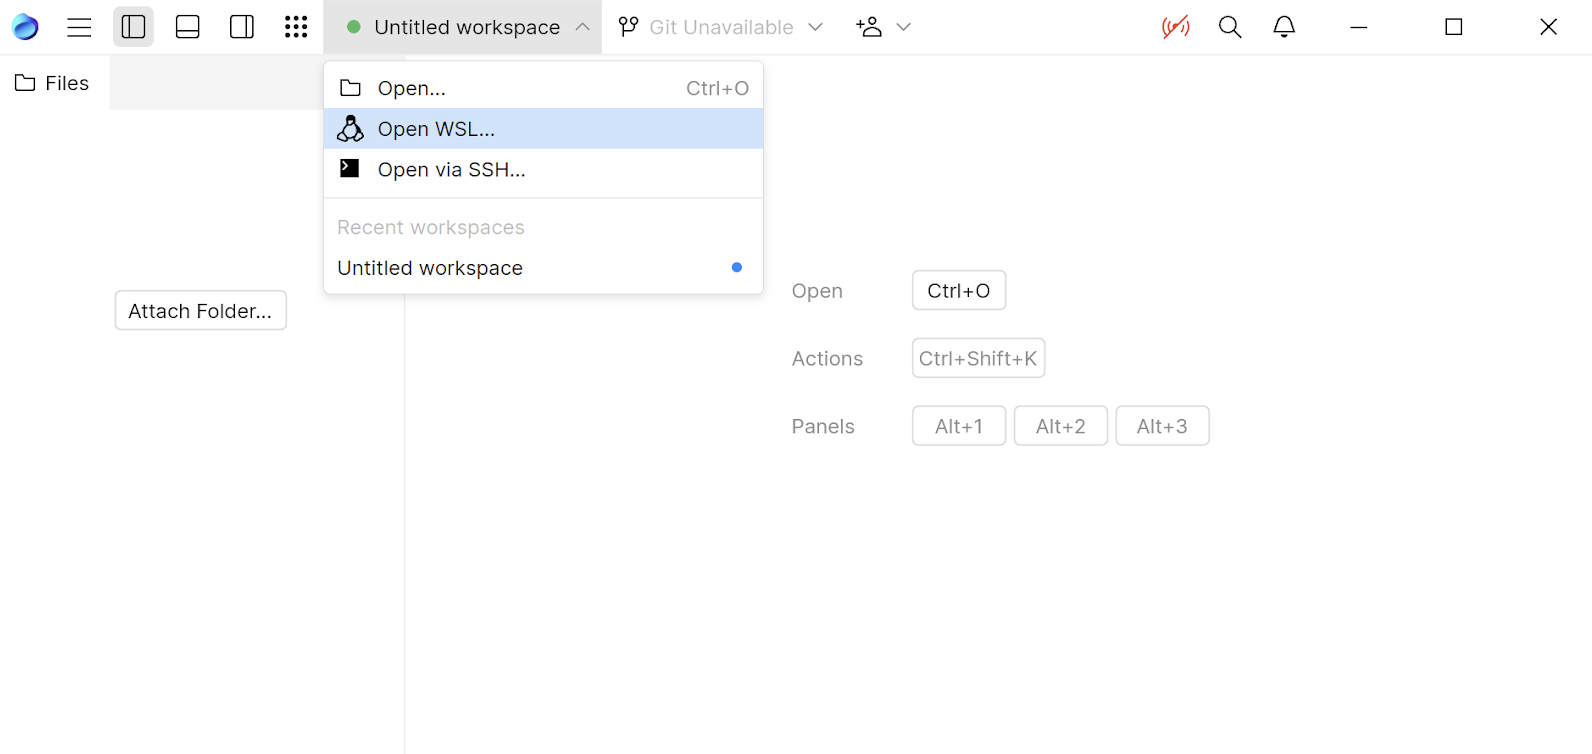 Open WSL item in the workspaces menu